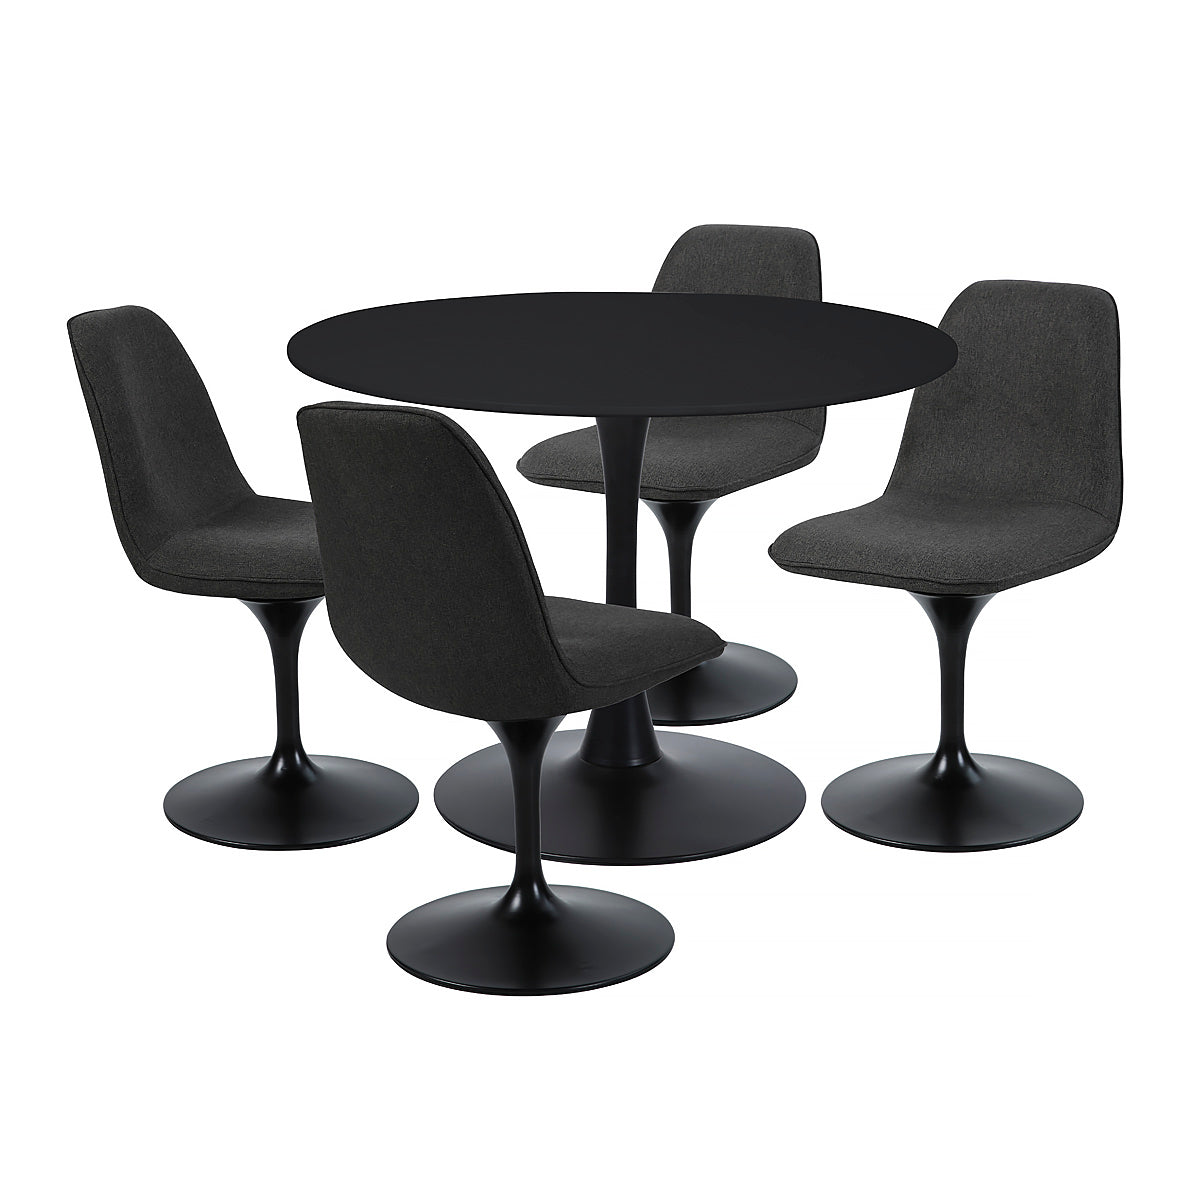 Chaise pivotante avec assise et dossier rembourrés recouverts de tissu noir bronze, base ronde en métal avec revêtement en epoxy noir - LORA